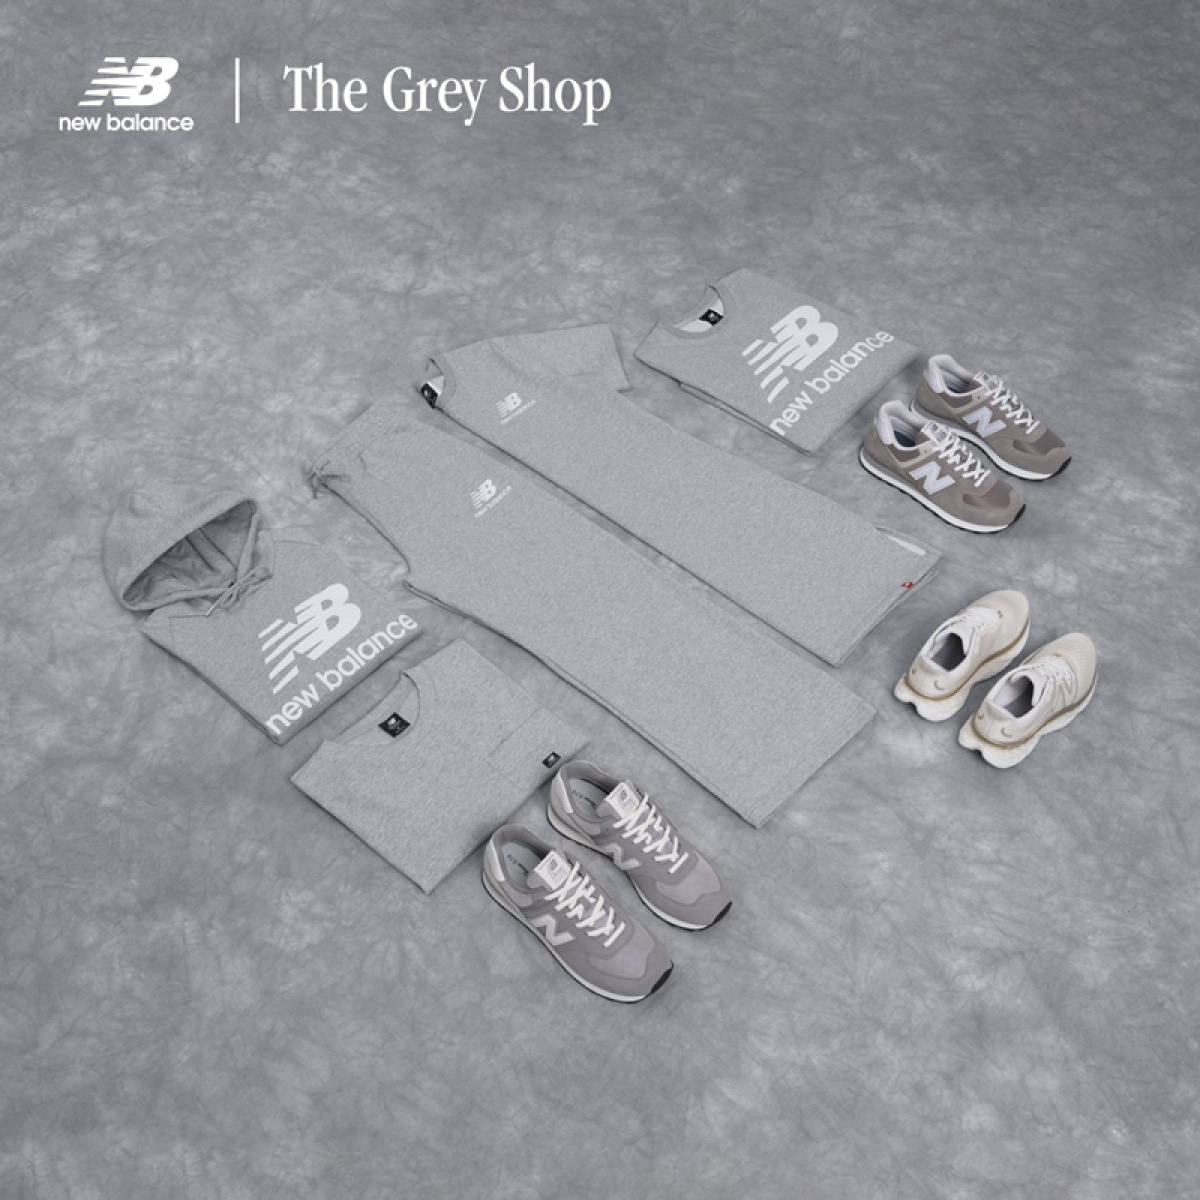 Grey Shop!